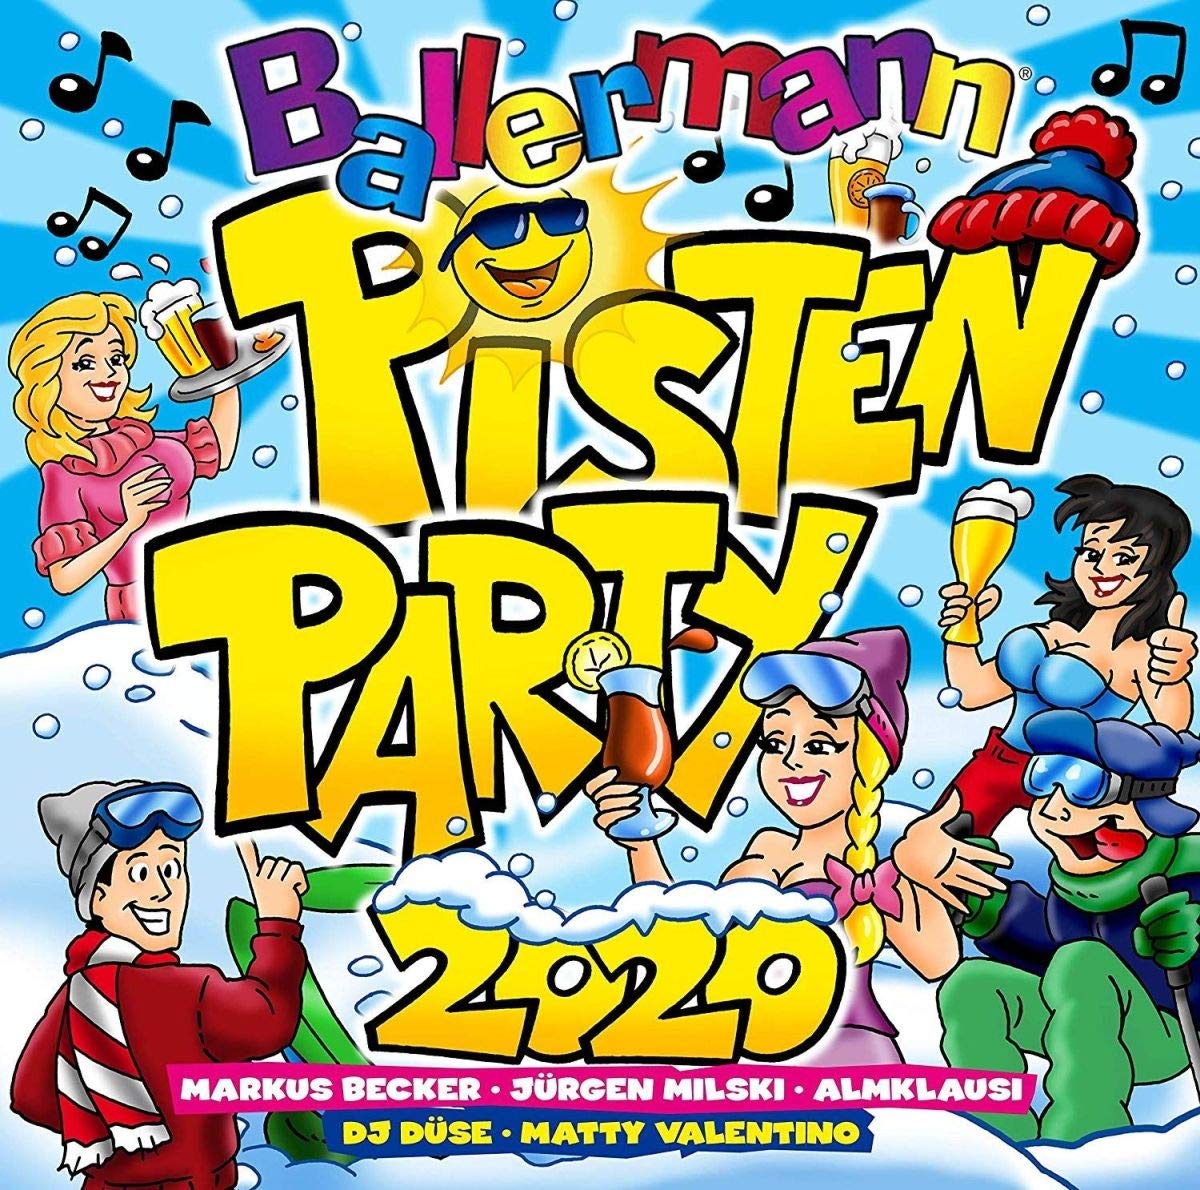 Ballermann Pistenparty 2020